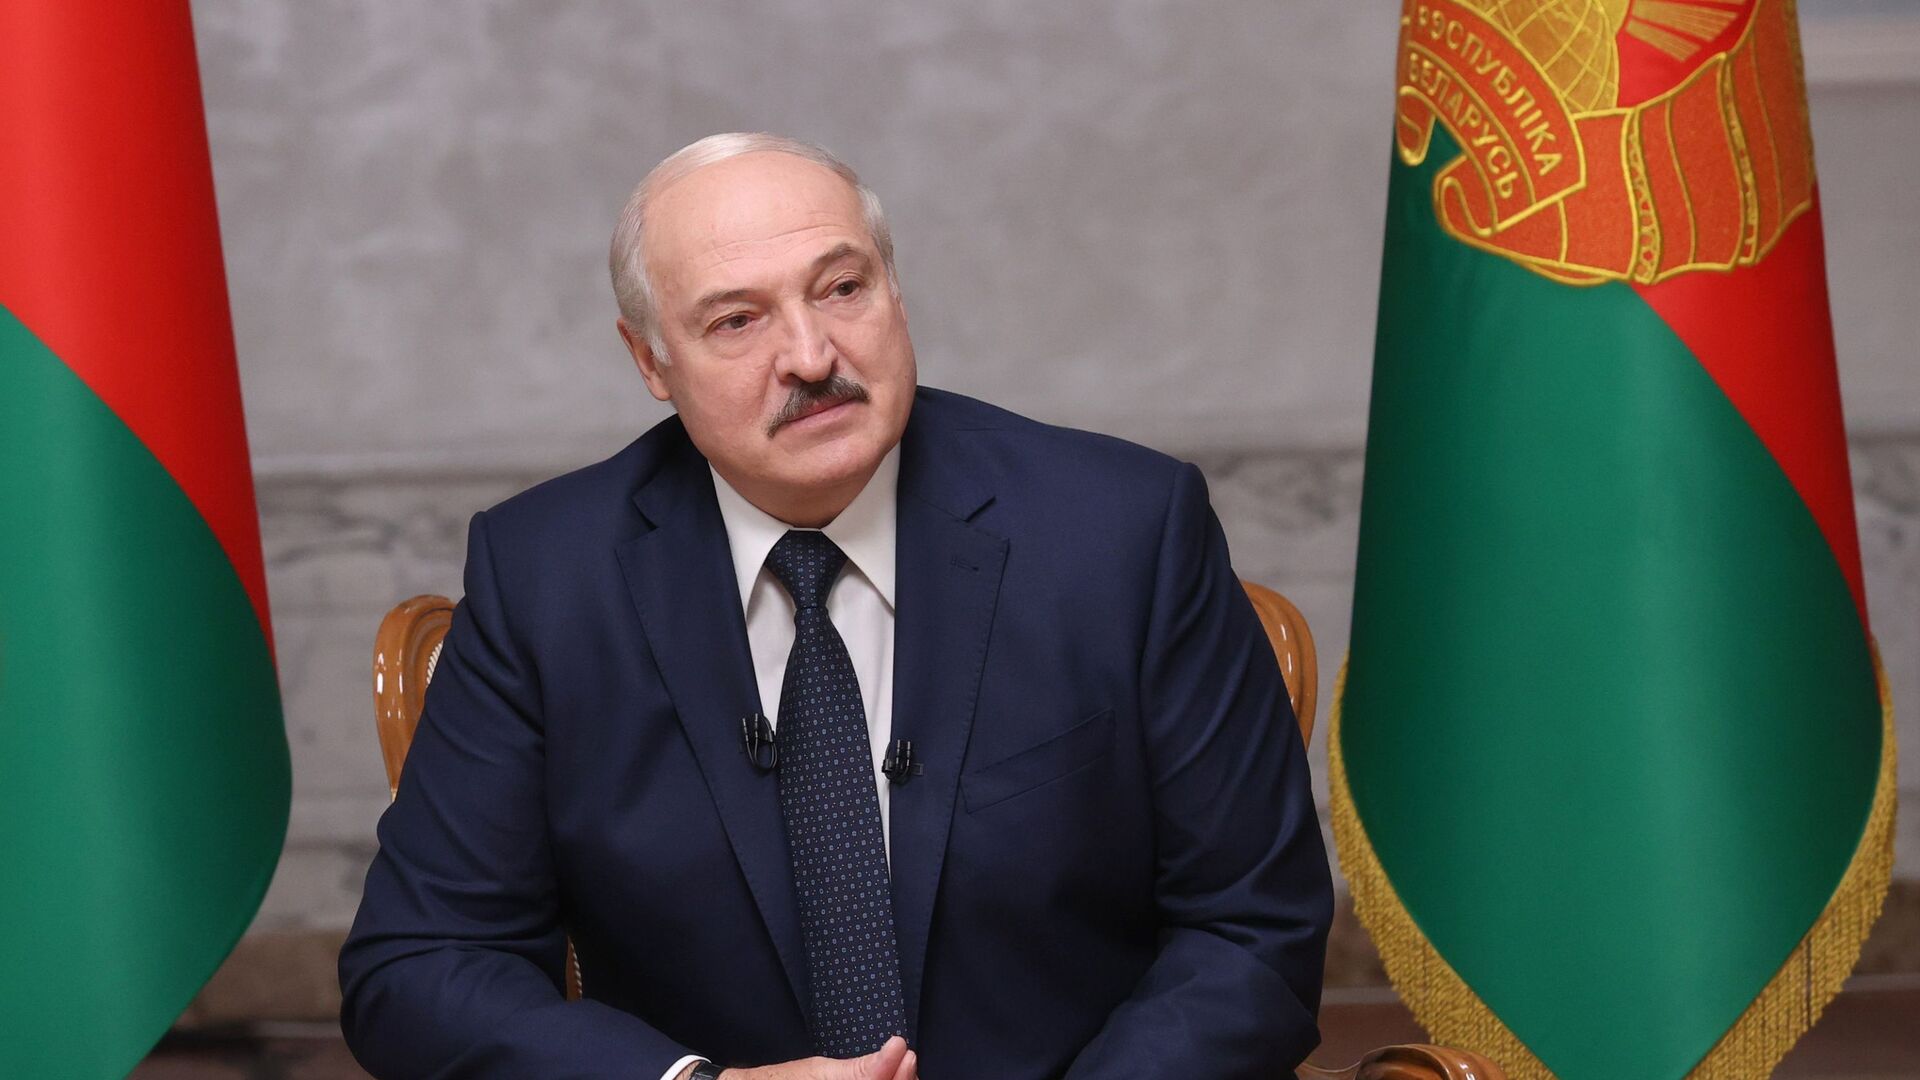 Președintele belarus,Aleksandr Lukașenko, - Sputnik Moldova, 1920, 01.12.2021